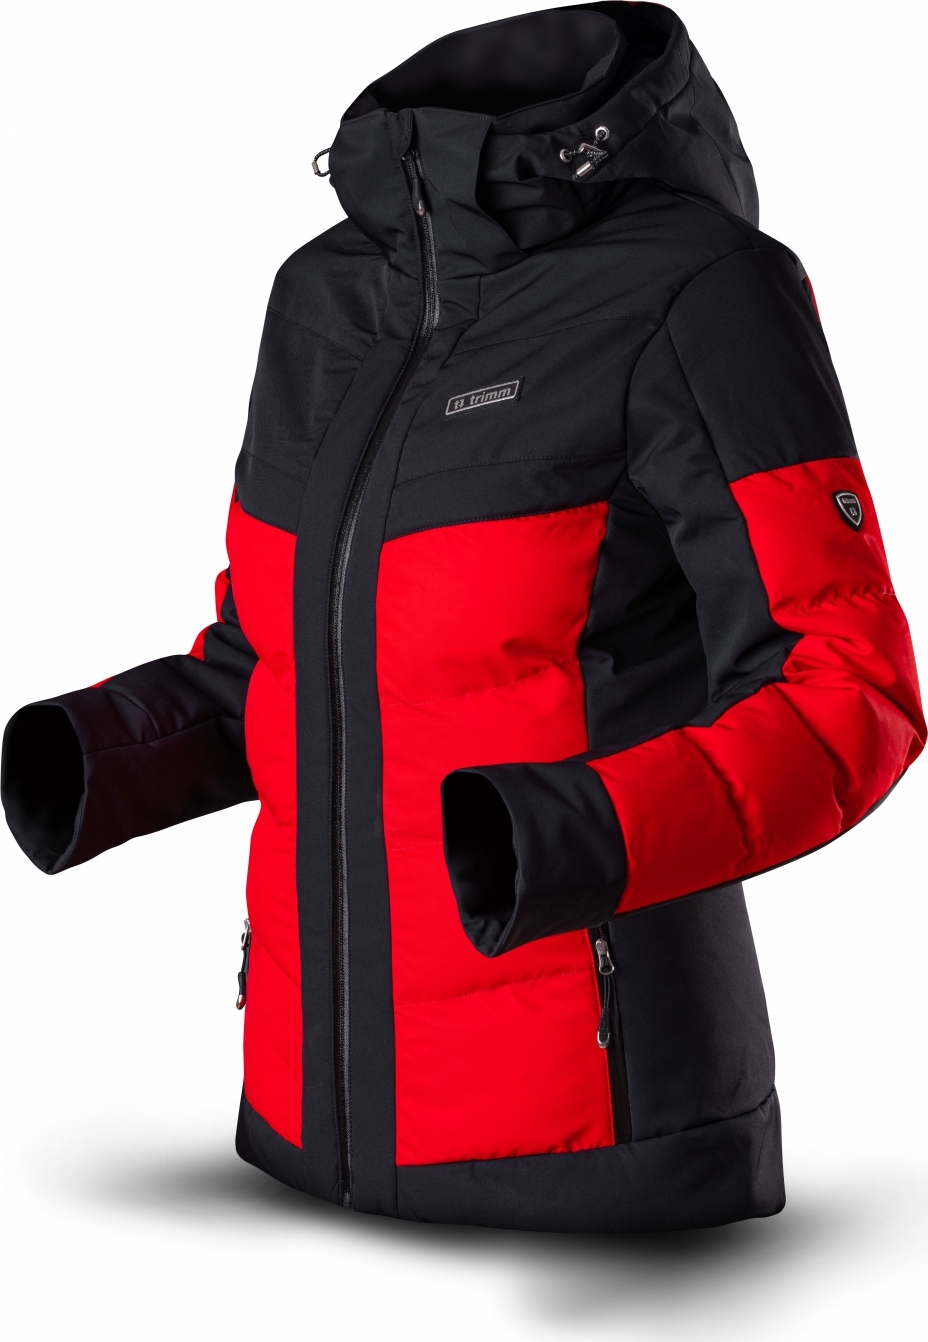 Dámská lyžařská bunda TRIMM Vario Lady červená/černá Velikost: S, Barva: red/ black